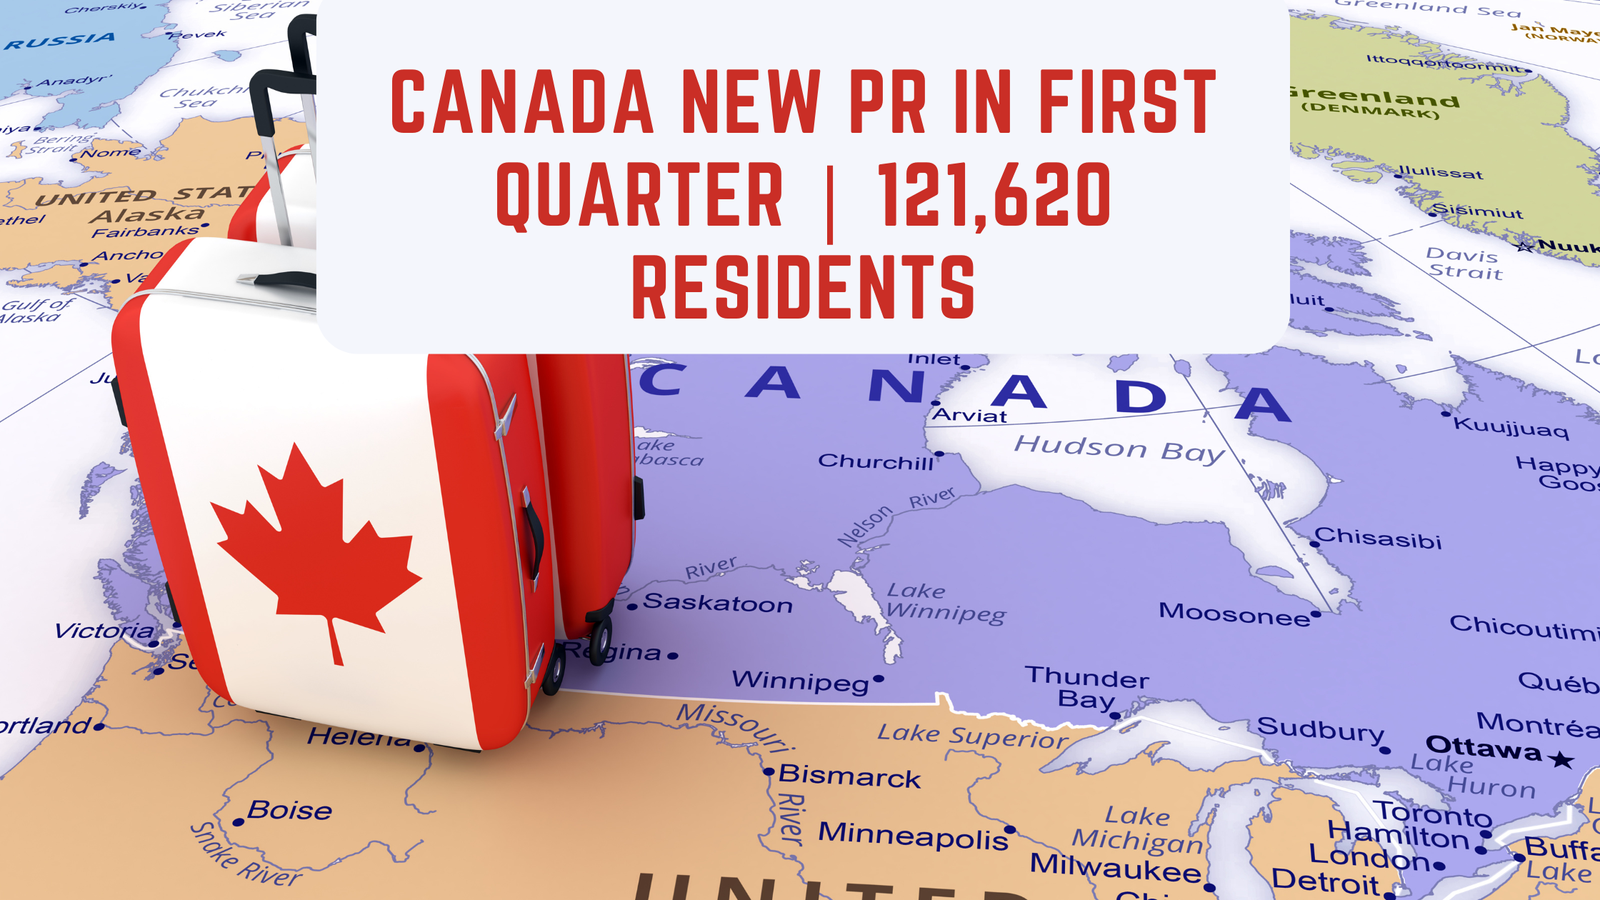 Canada New PR In First Quarter